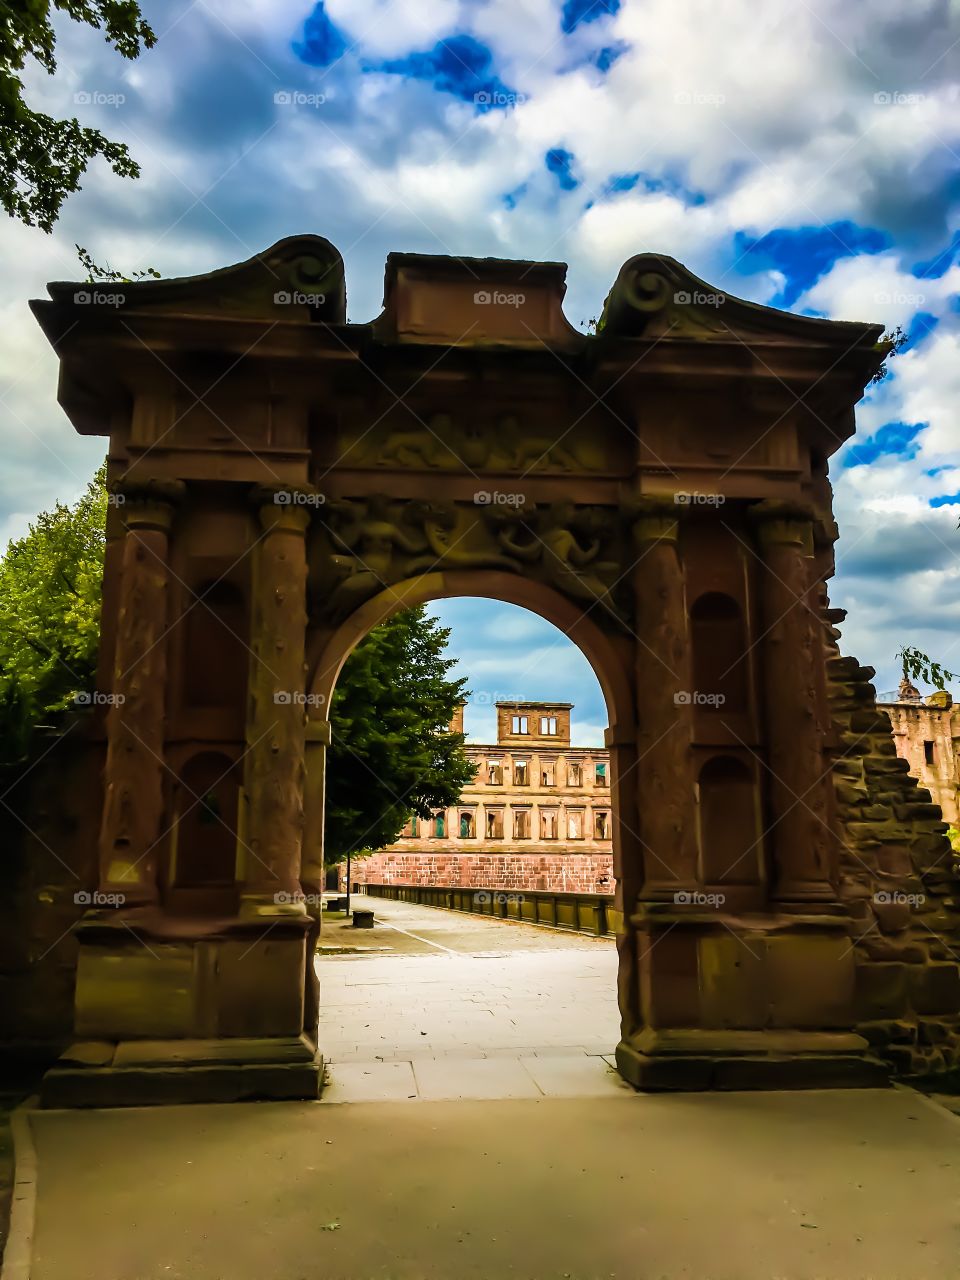 Near the entrance of Heidelberg Castle in Germany.